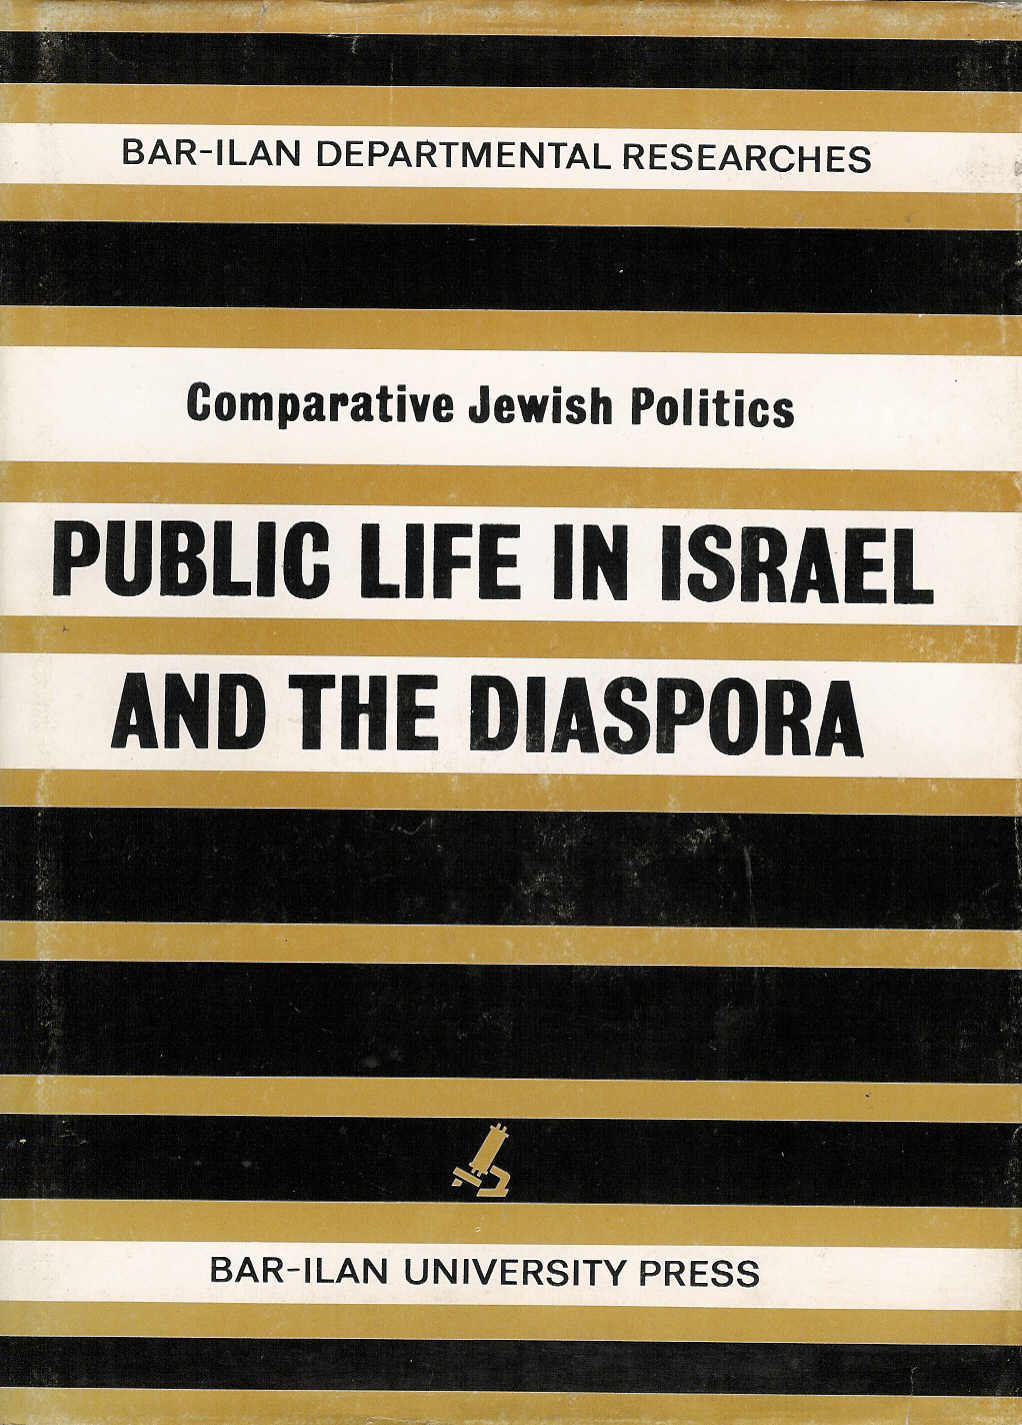 Public Life in Israel and the Diaspora